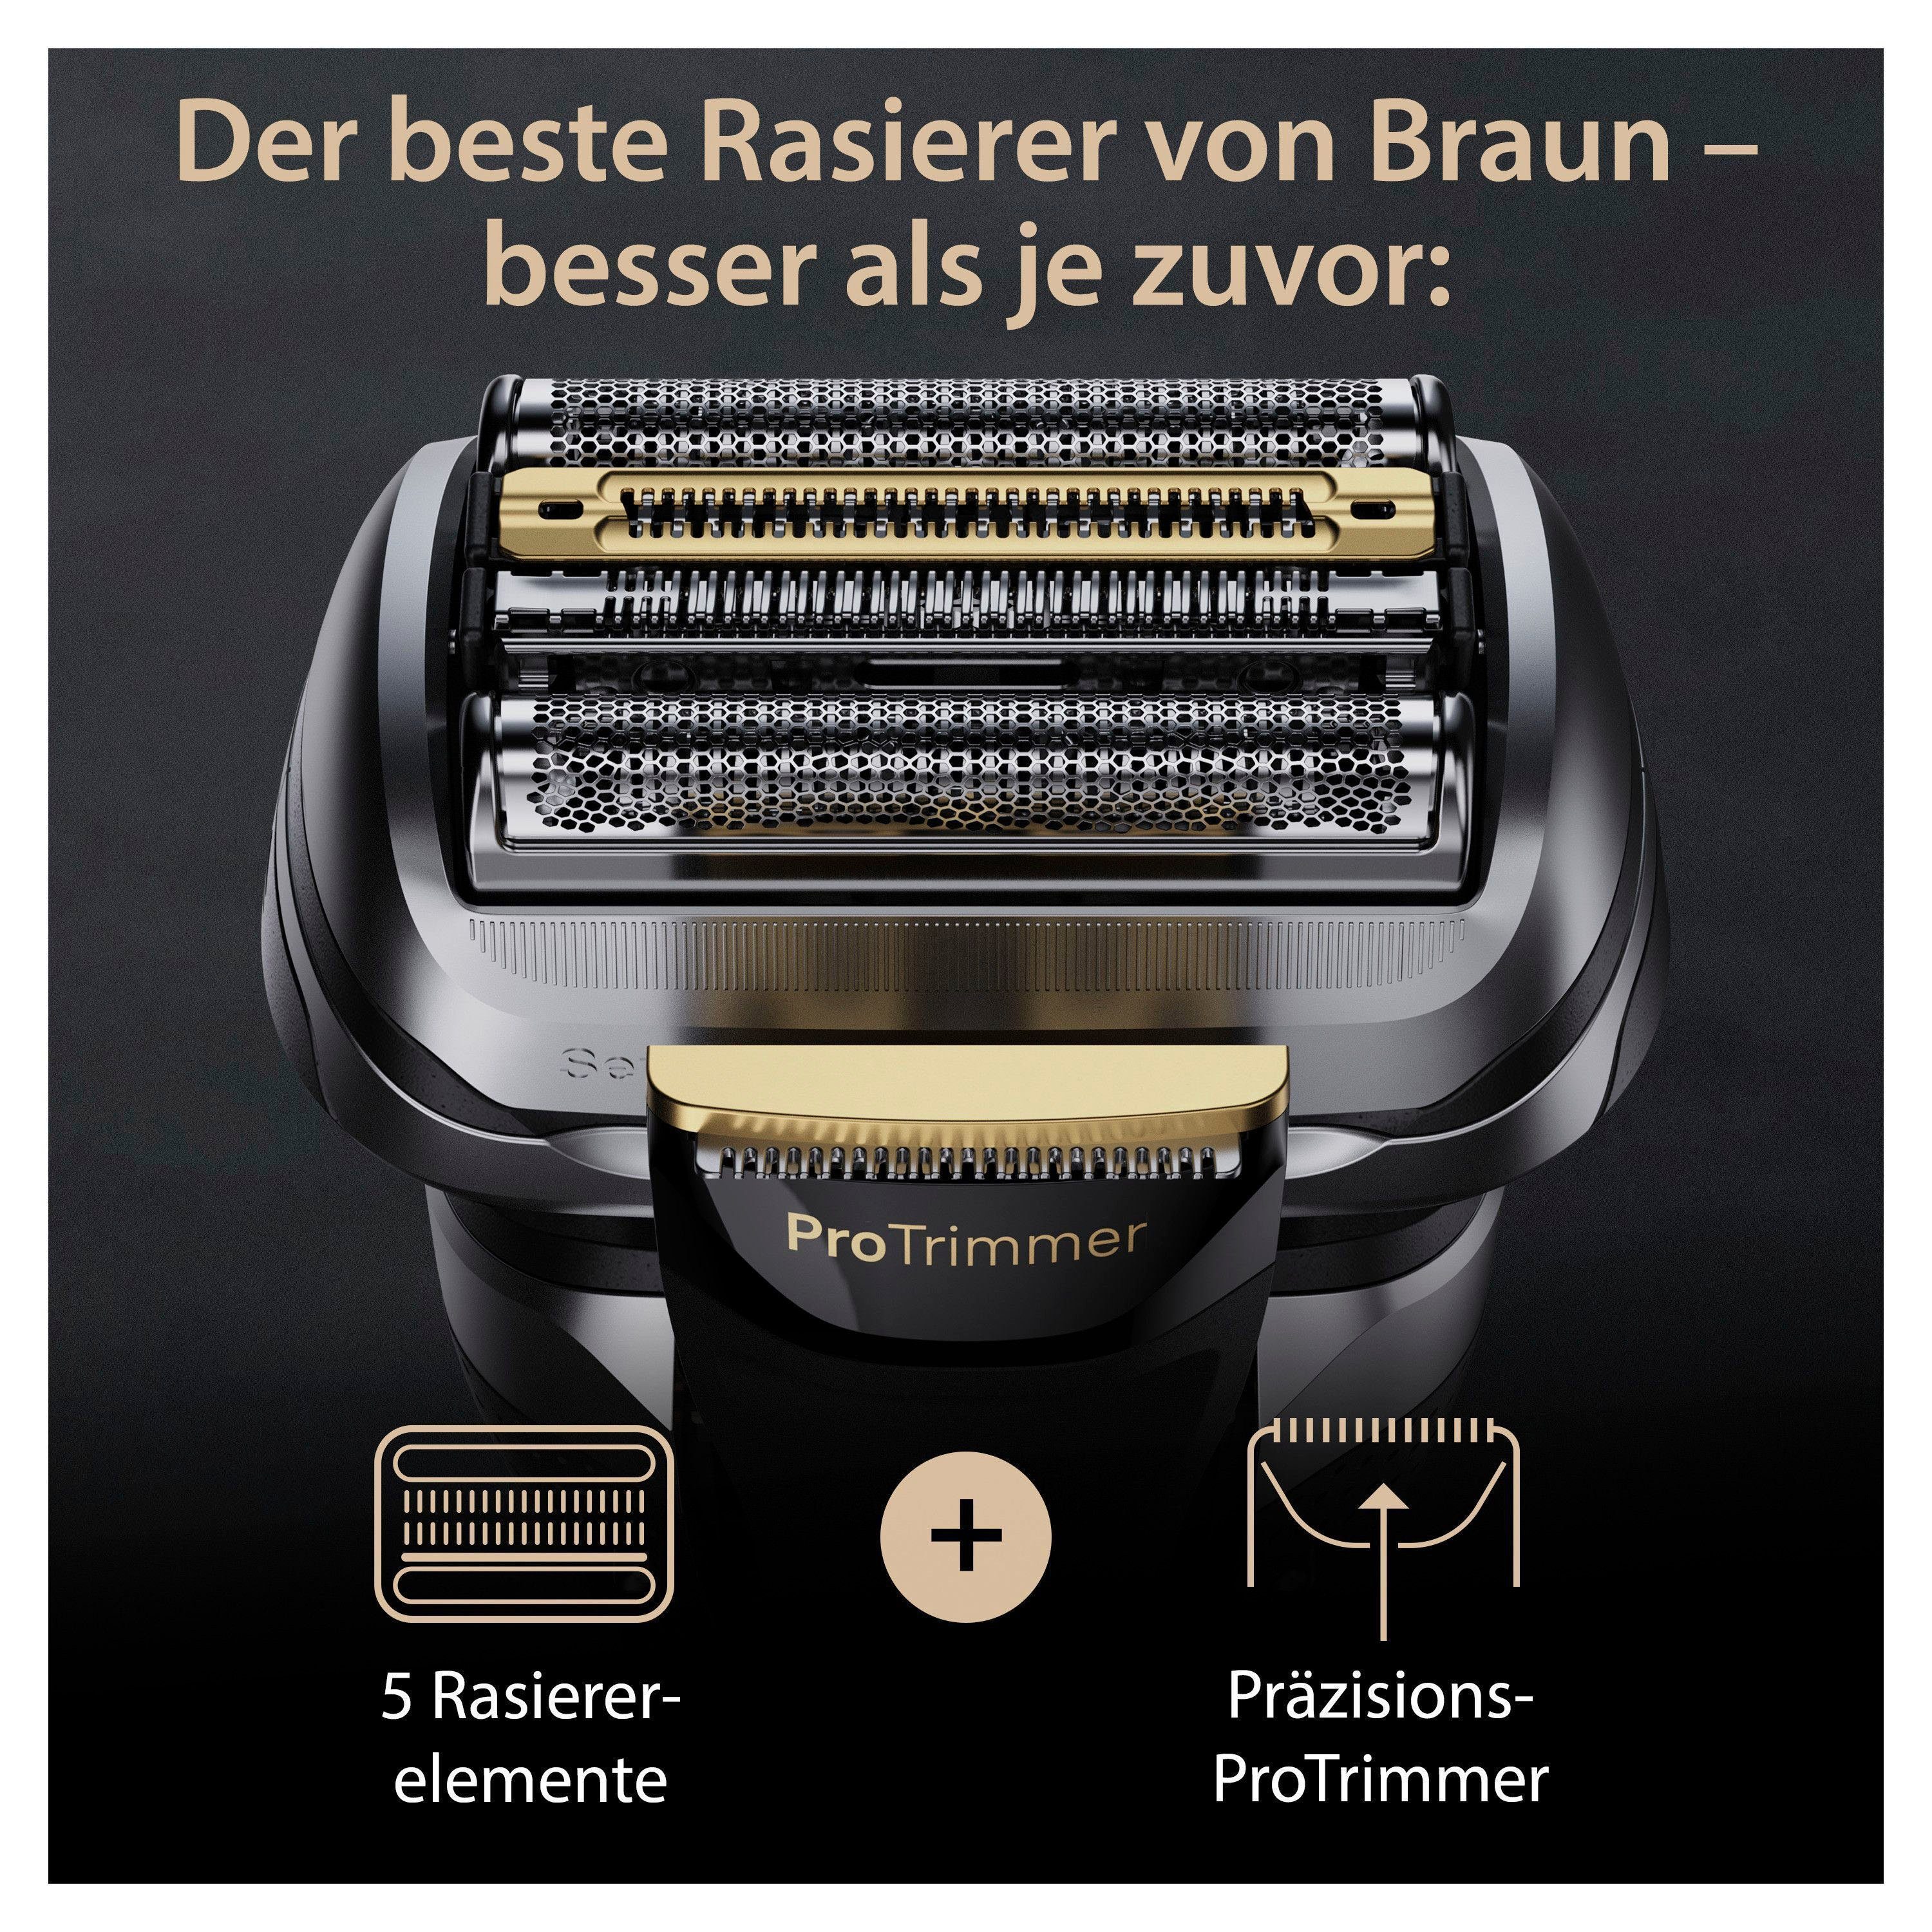 Precision Elektrorasierer Series Braun Reinigungsstation, ProTrimmer 9 9567cc, Pro+